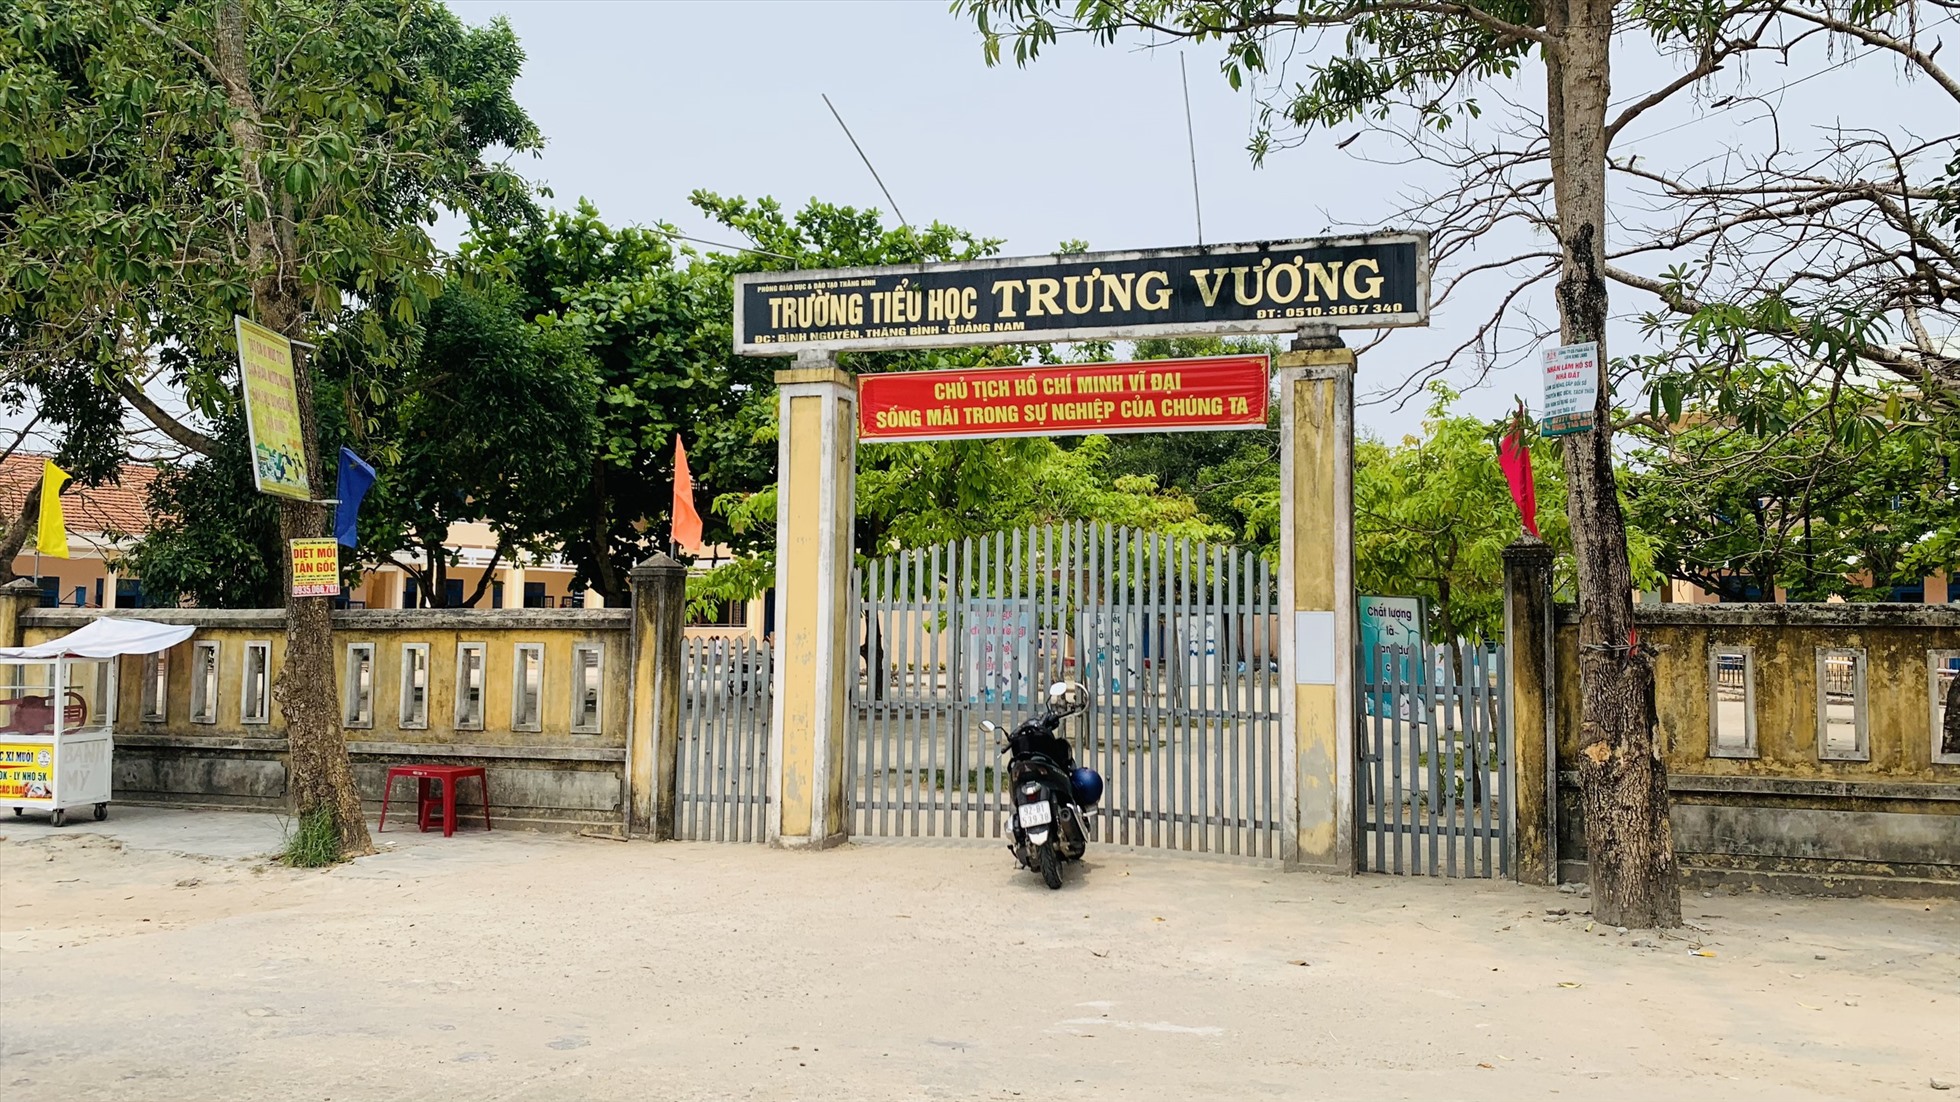 Trường Tiểu học Trưng Vương (cơ sở 2), xã Bình Nguyên, huyện Thăng Bình, Quảng Nam.